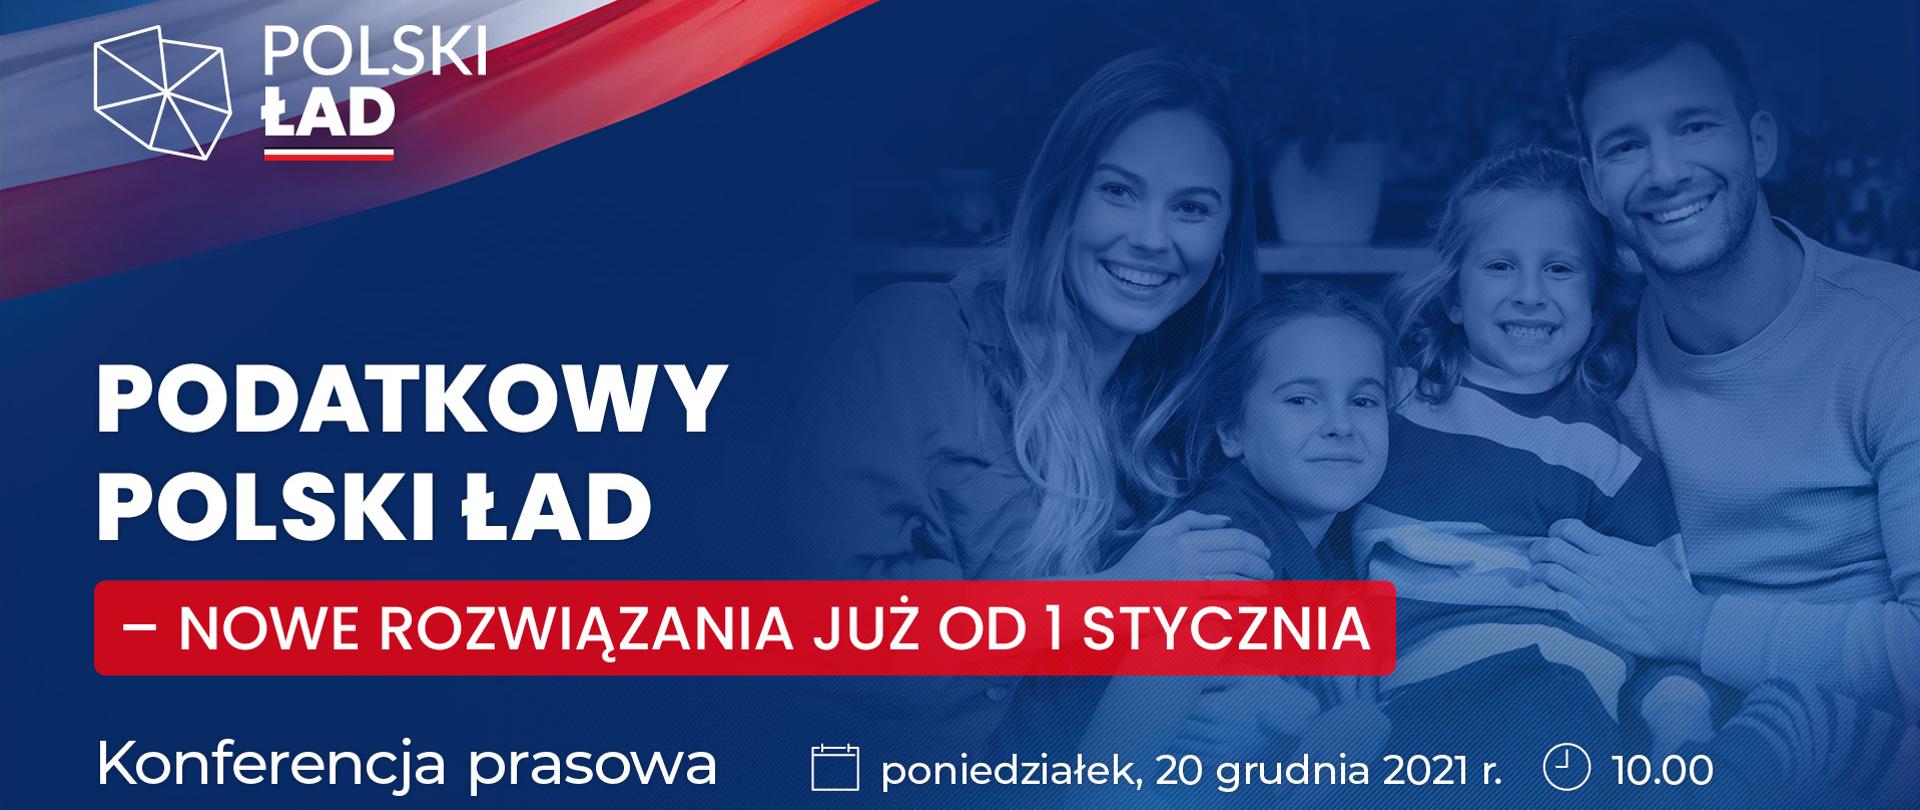 Zapowiedź konferencji prasowej o podatkowym Polskim Ładzie